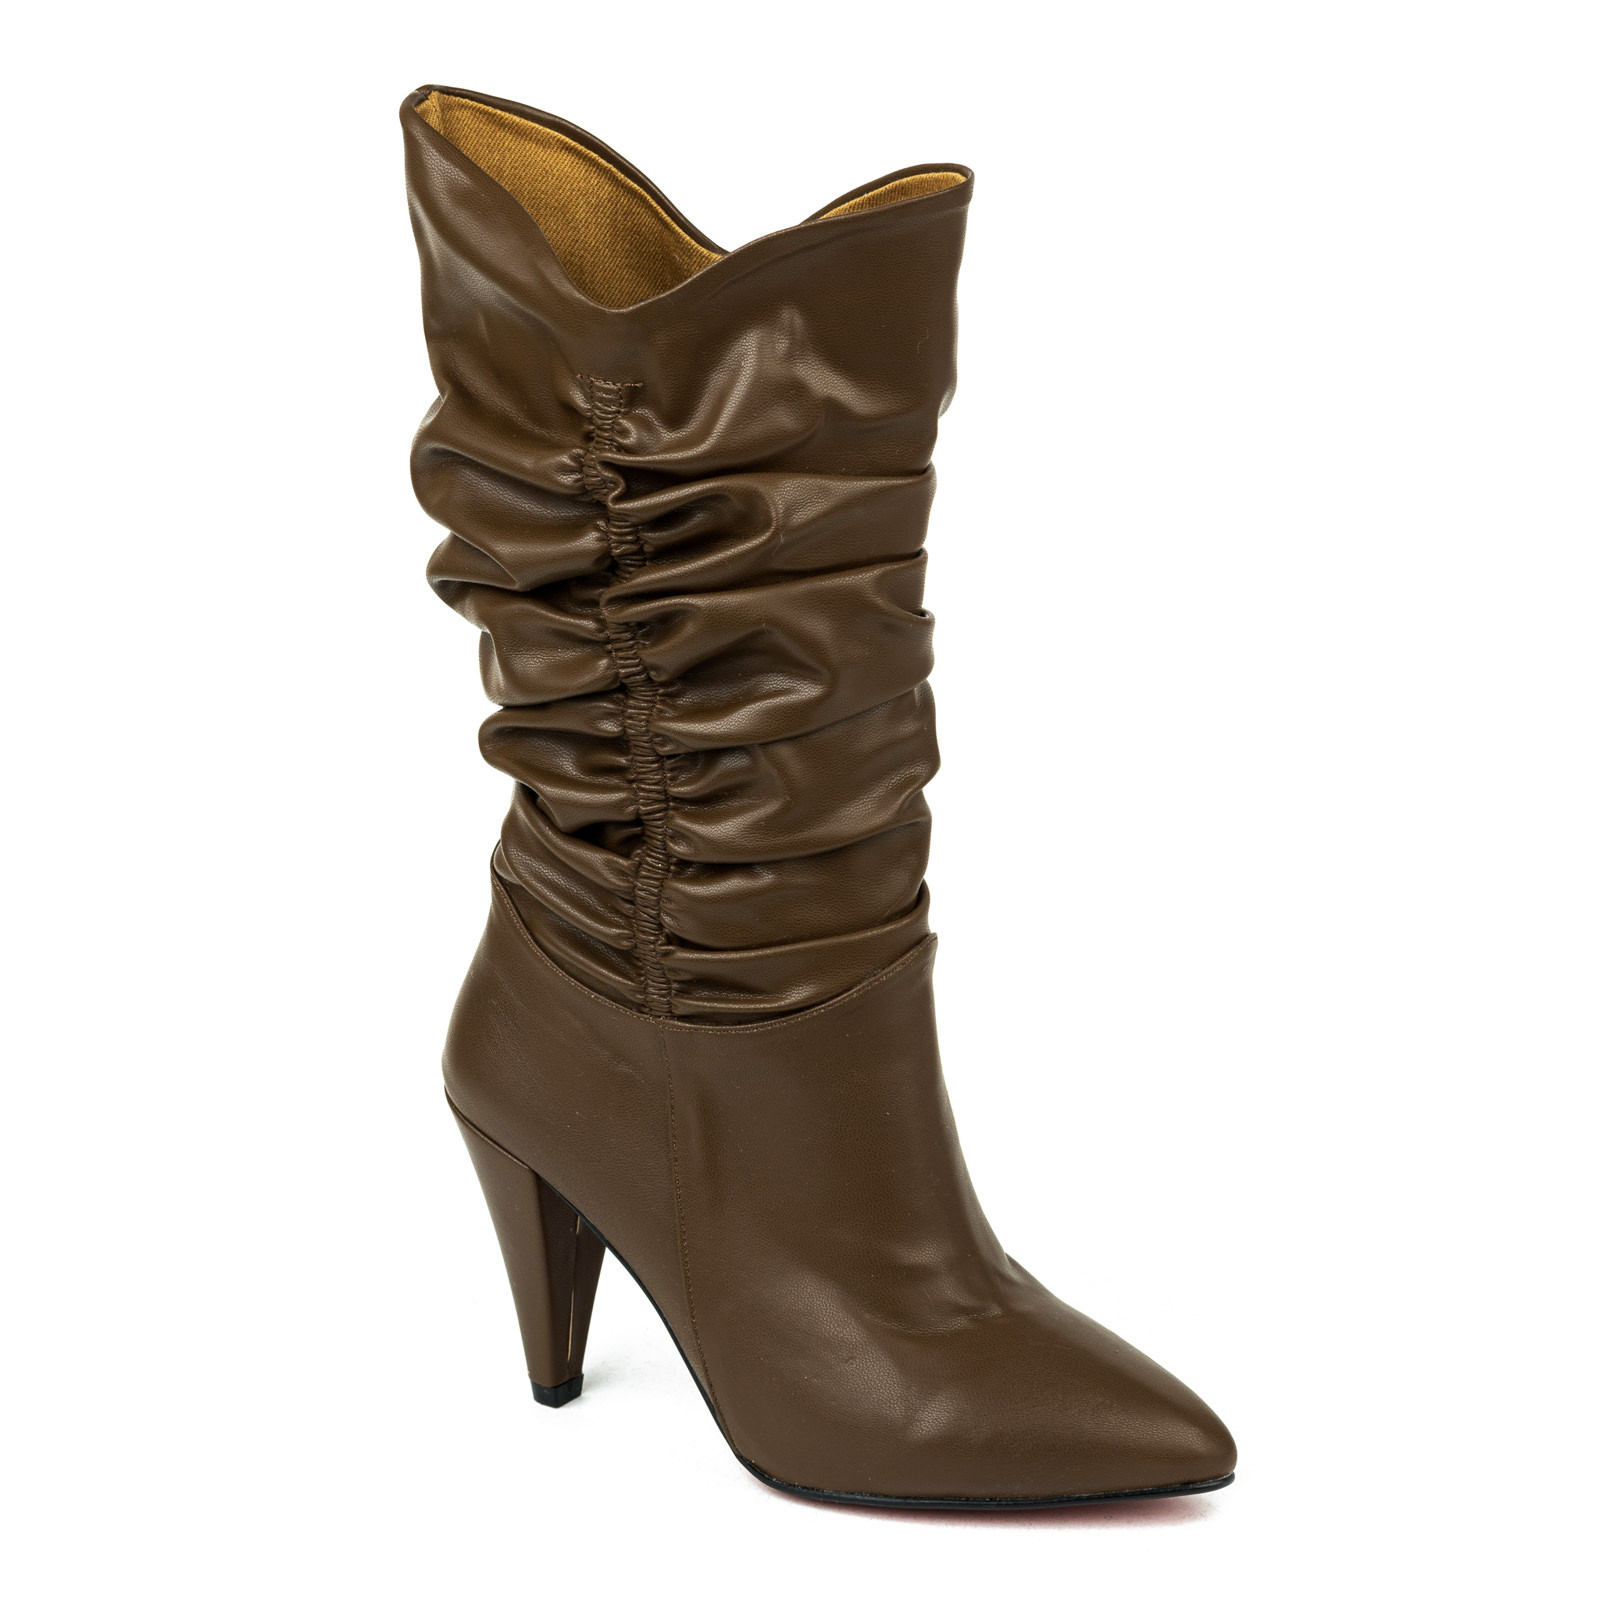 Women boots B035 - BROWN